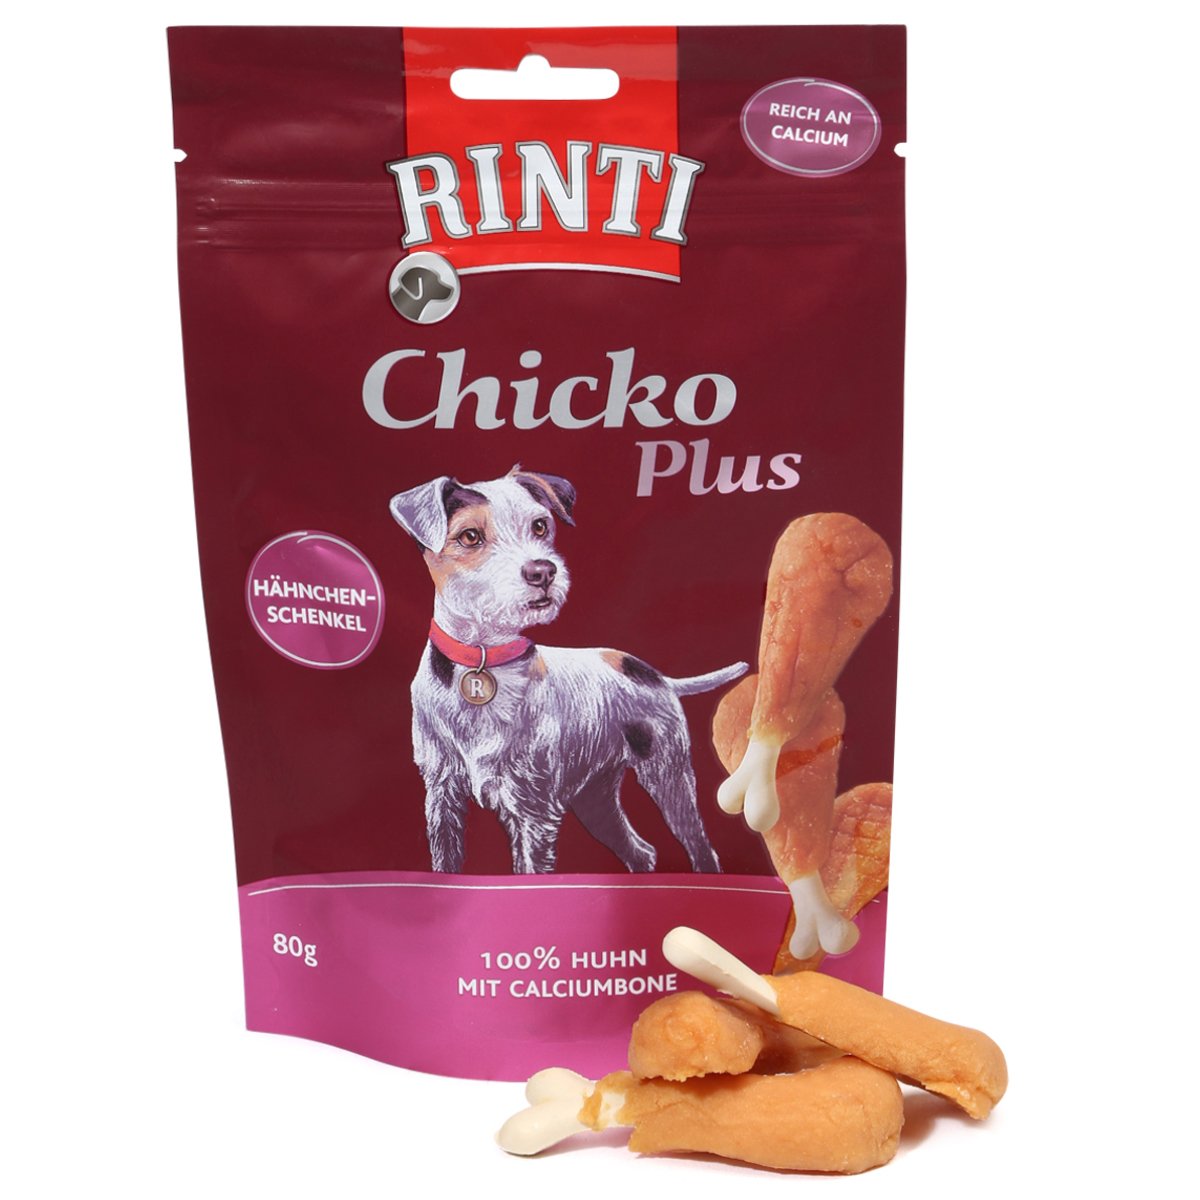 RINTI Extra Chicko Plus Hähnchenschenkel mit Calcium 80g